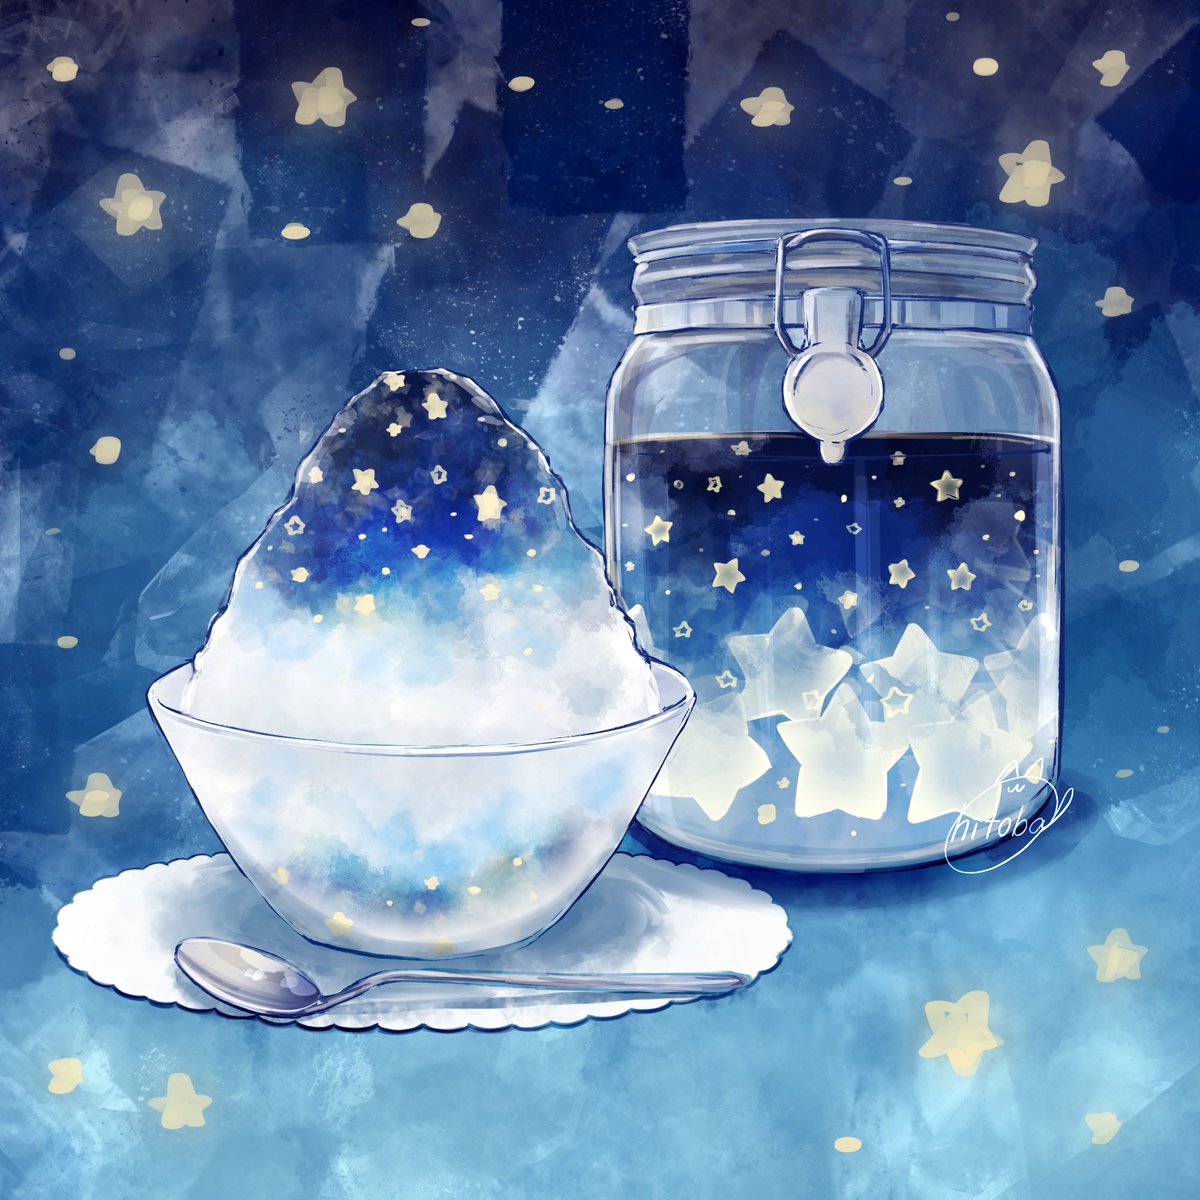 「星のシロップとかき氷 」|ひとばのイラスト